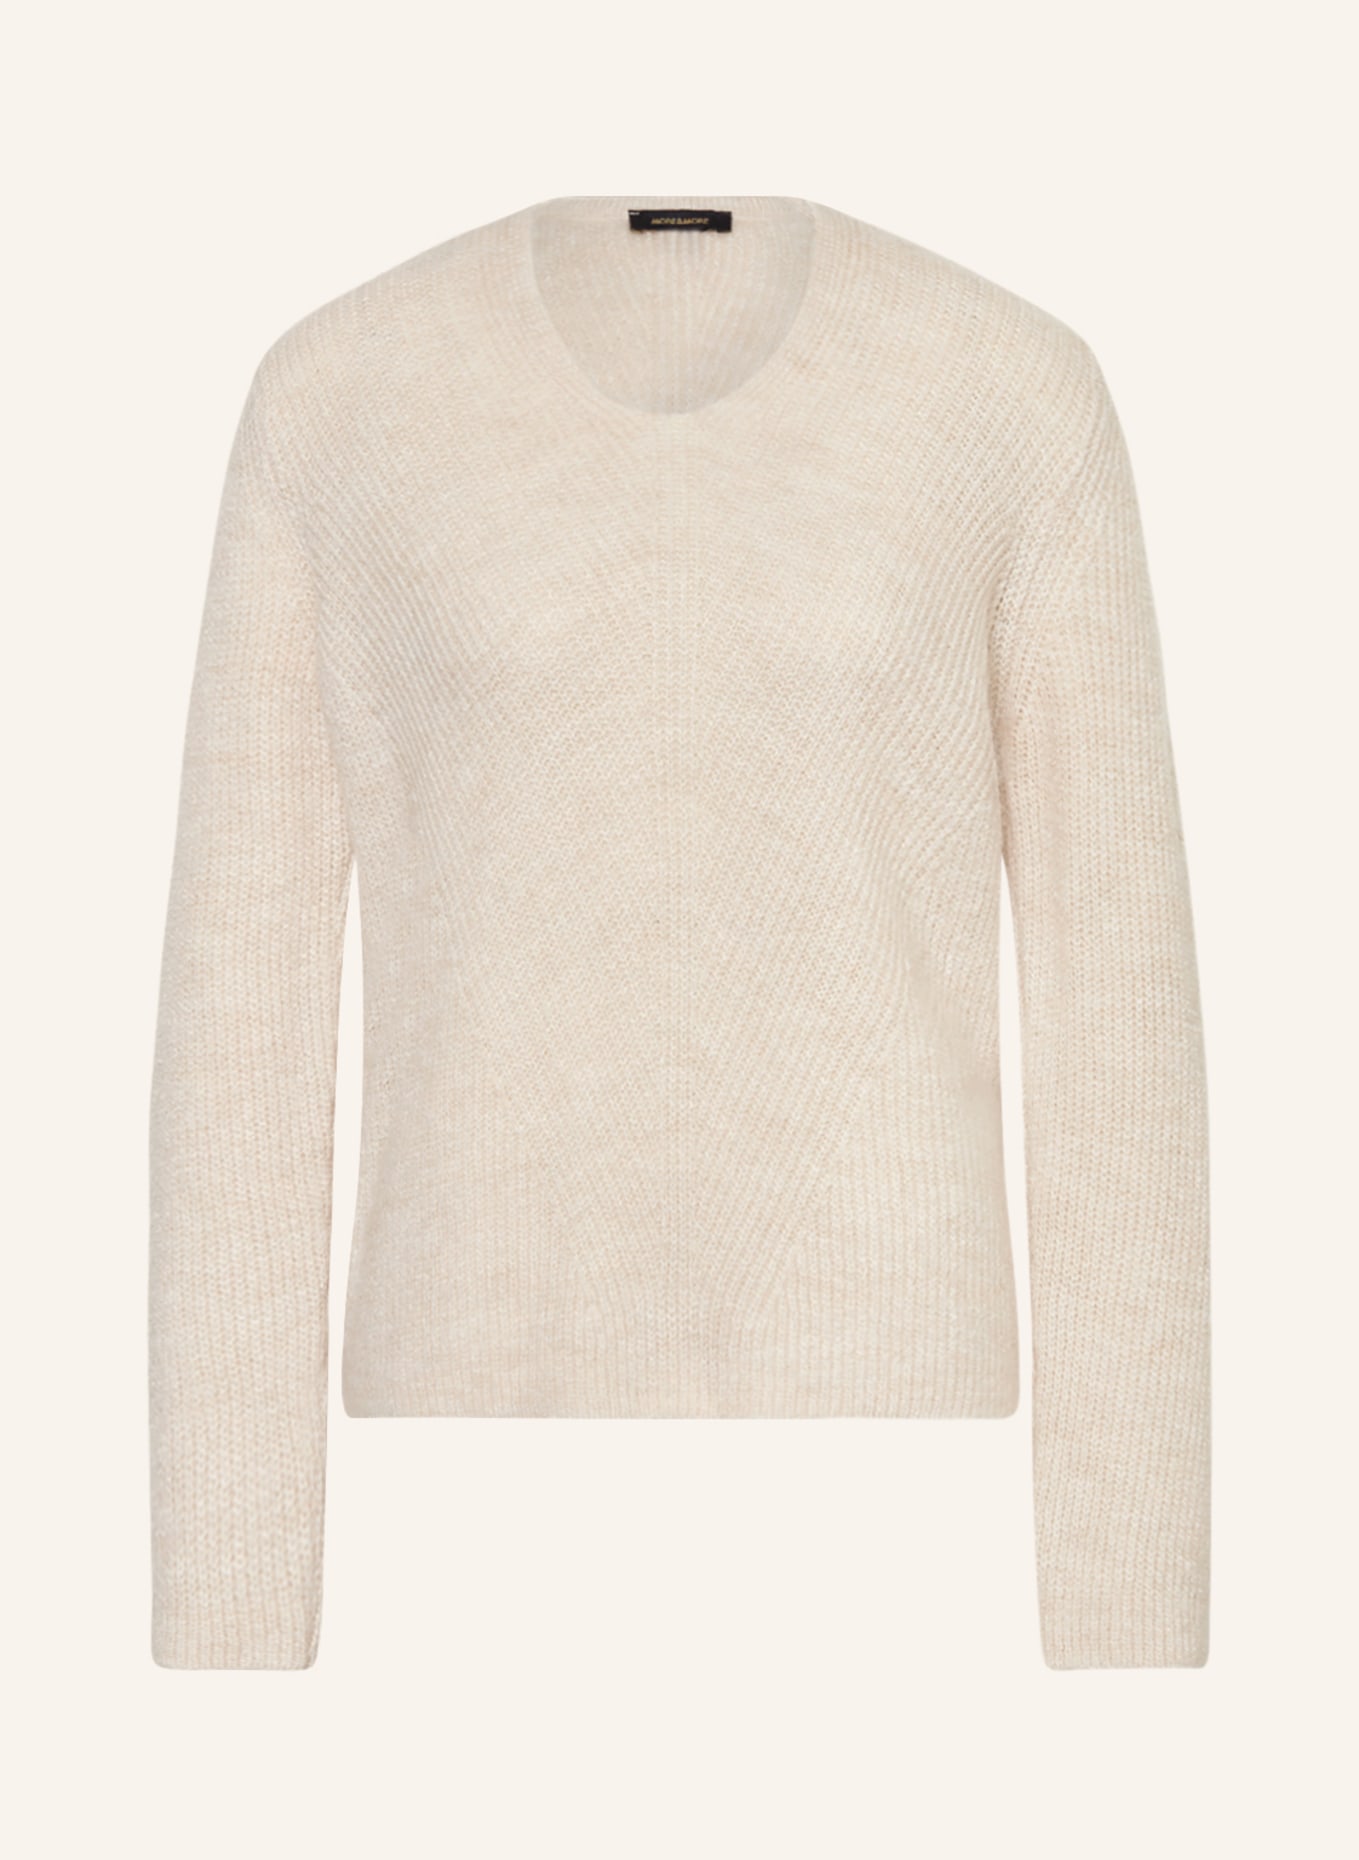 MORE & MORE Pullover, Farbe: ECRU (Bild 1)